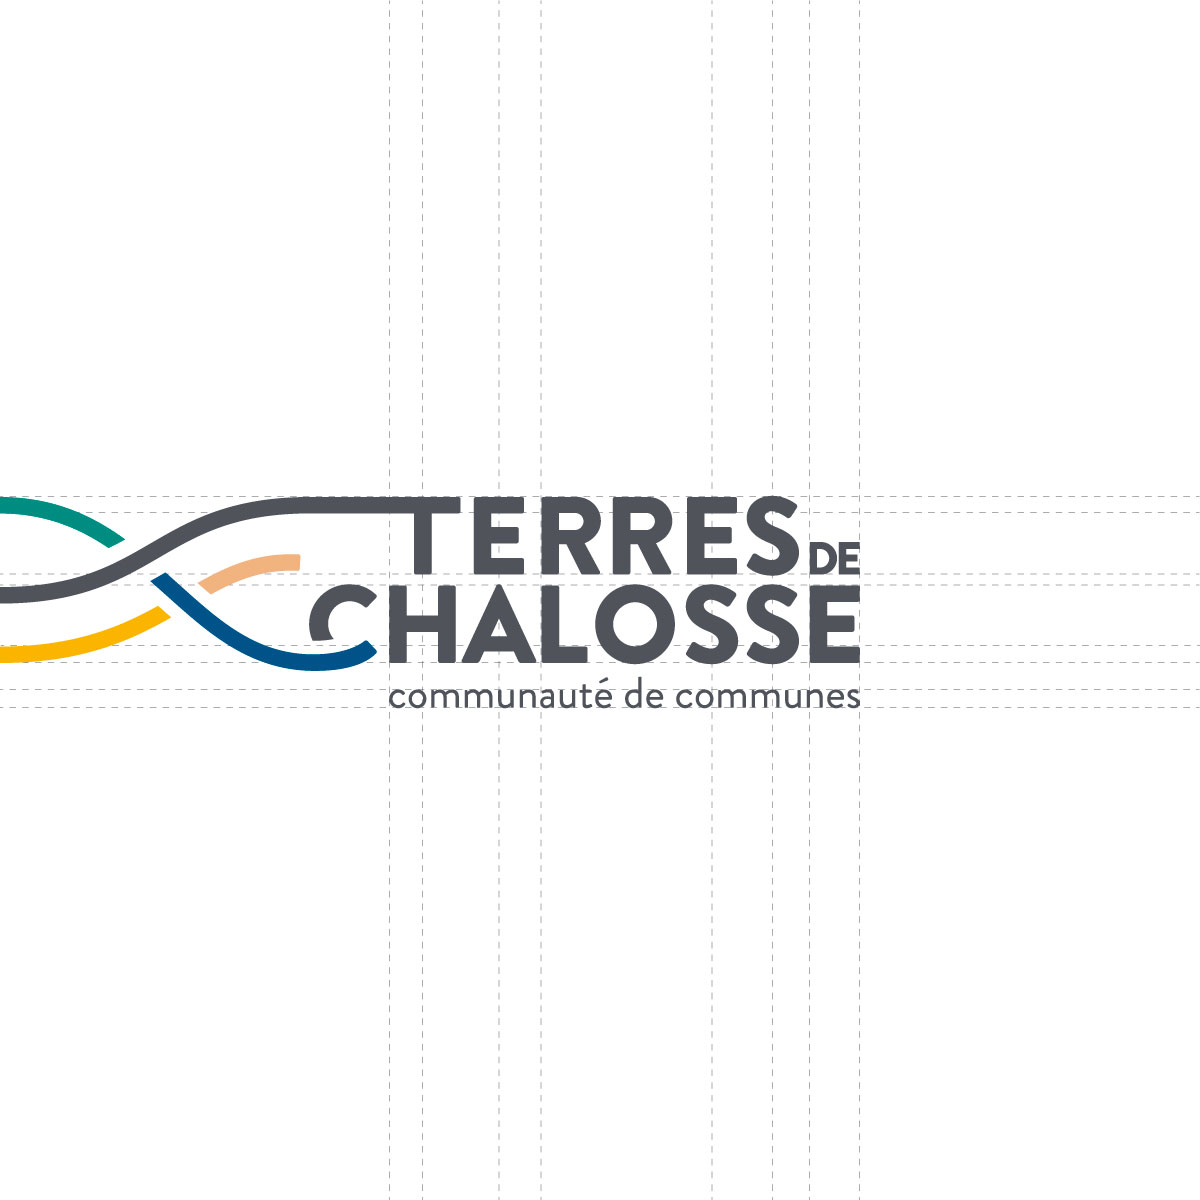 Terres de Chalosse logo construction